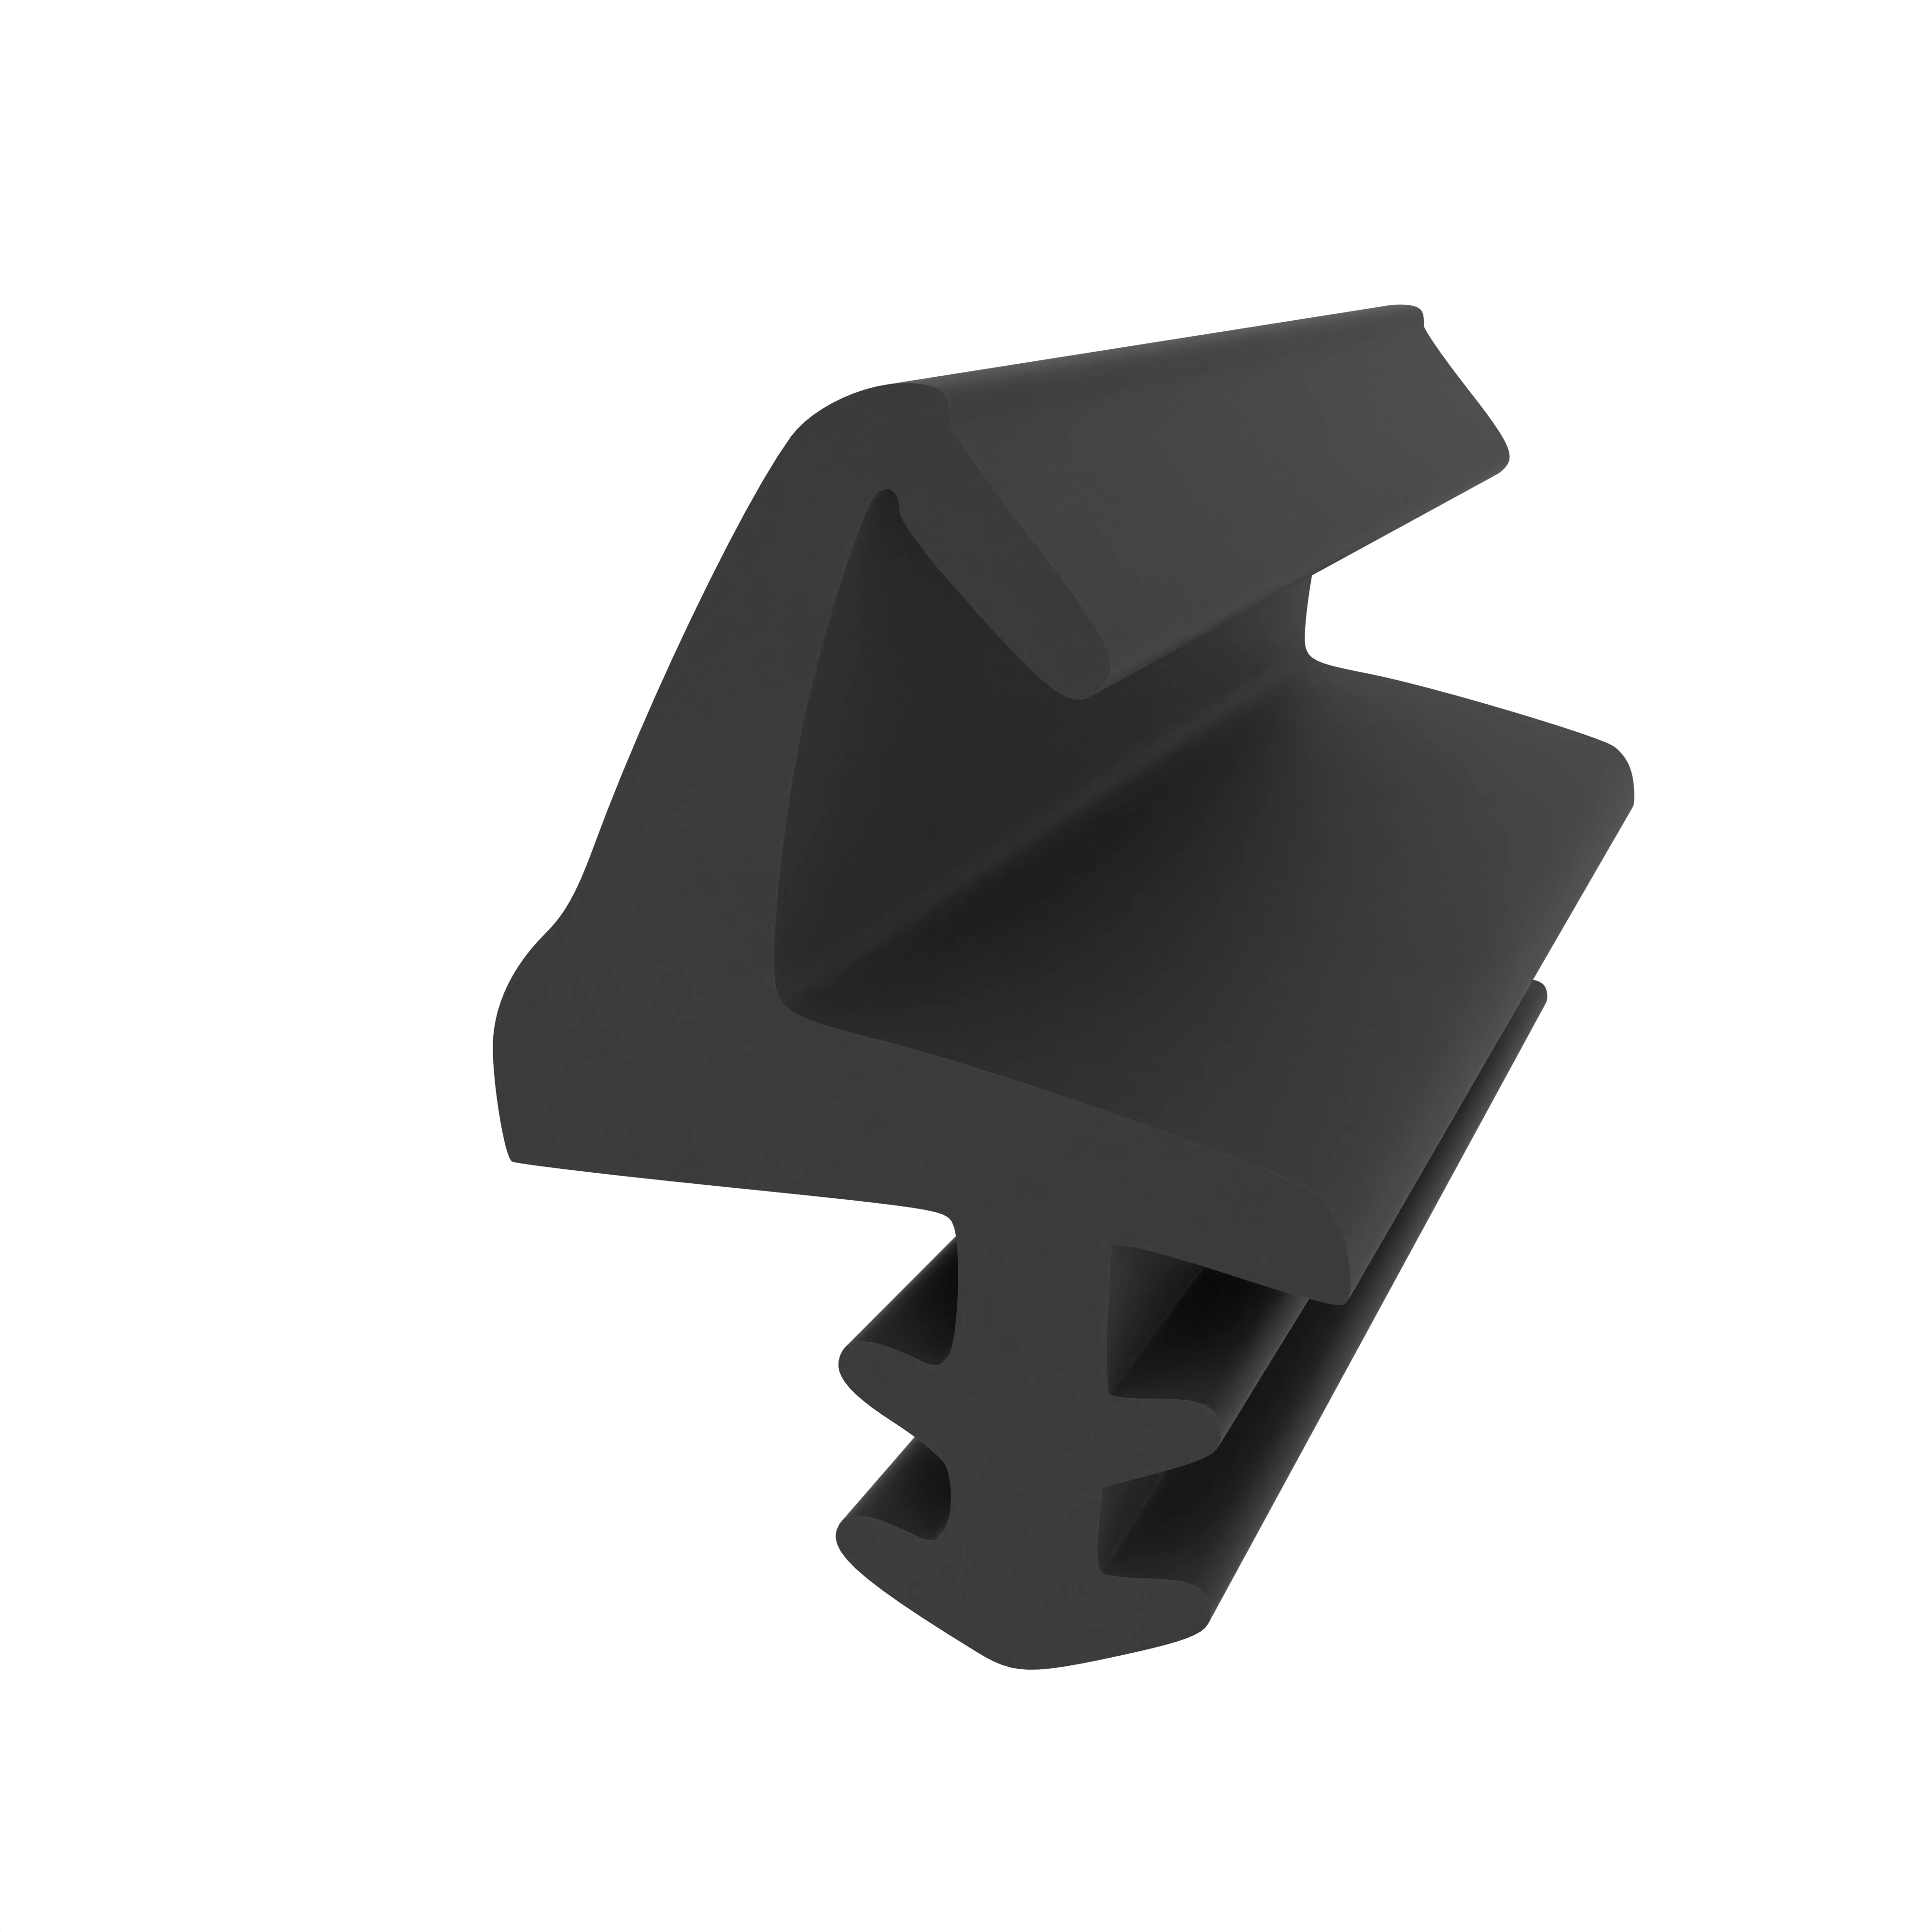 Mitteldichtung für Metall- oder Alufenster | 17 mm Höhe | Farbe: schwarz 